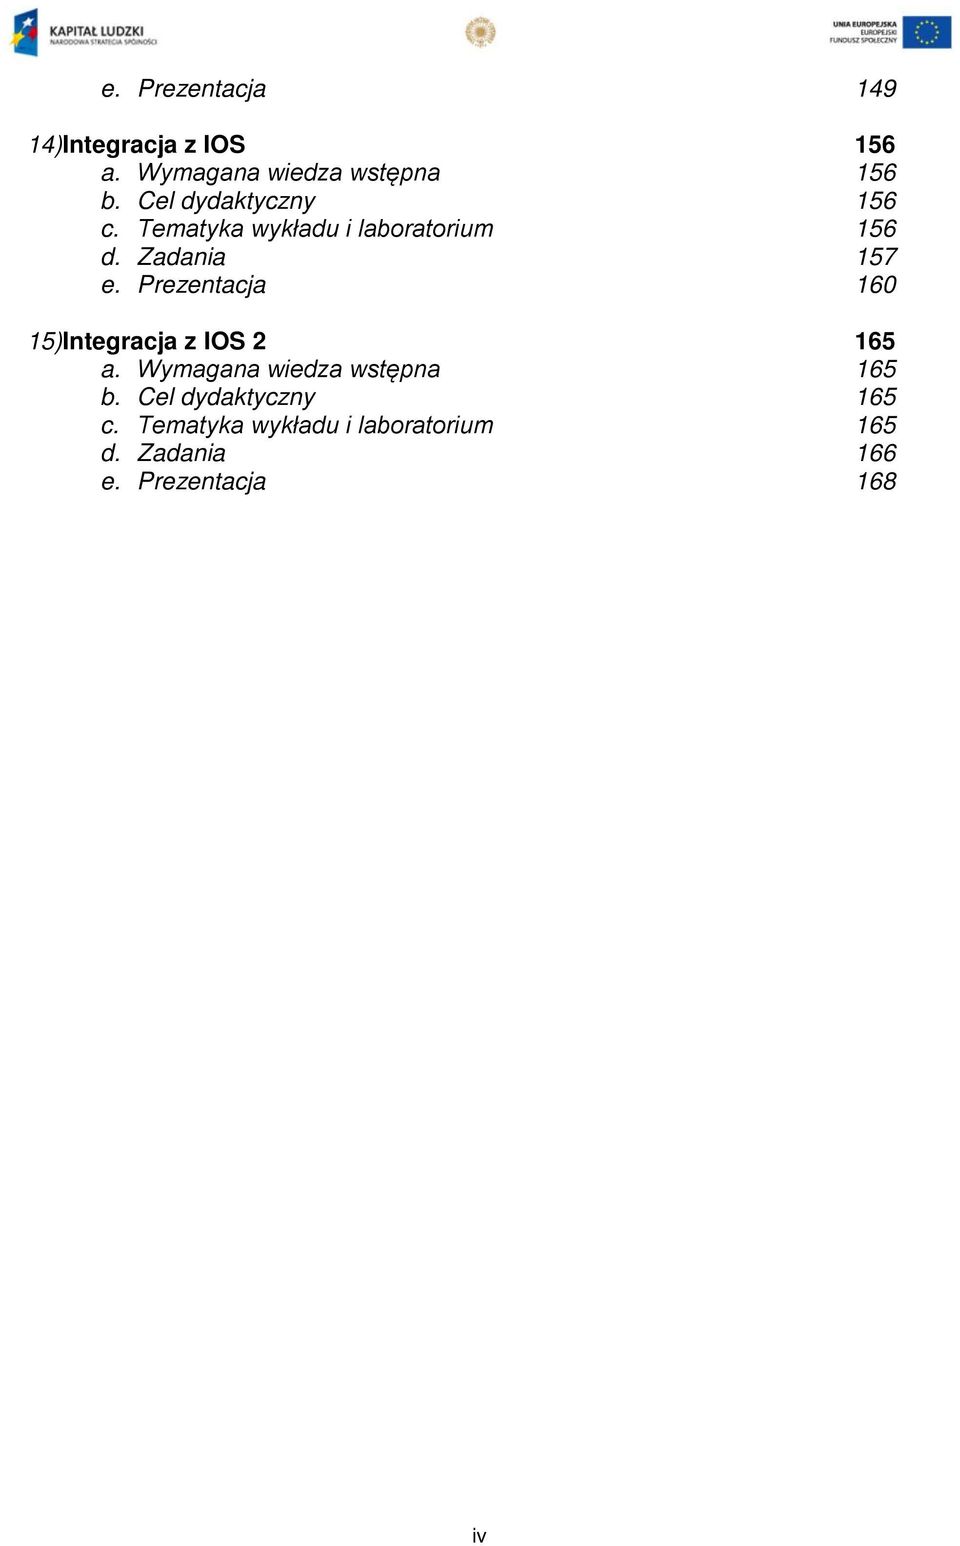 Prezentacja 160 15)Integracja z IOS 2 165 a. Wymagana wiedza wstępna 165 b.